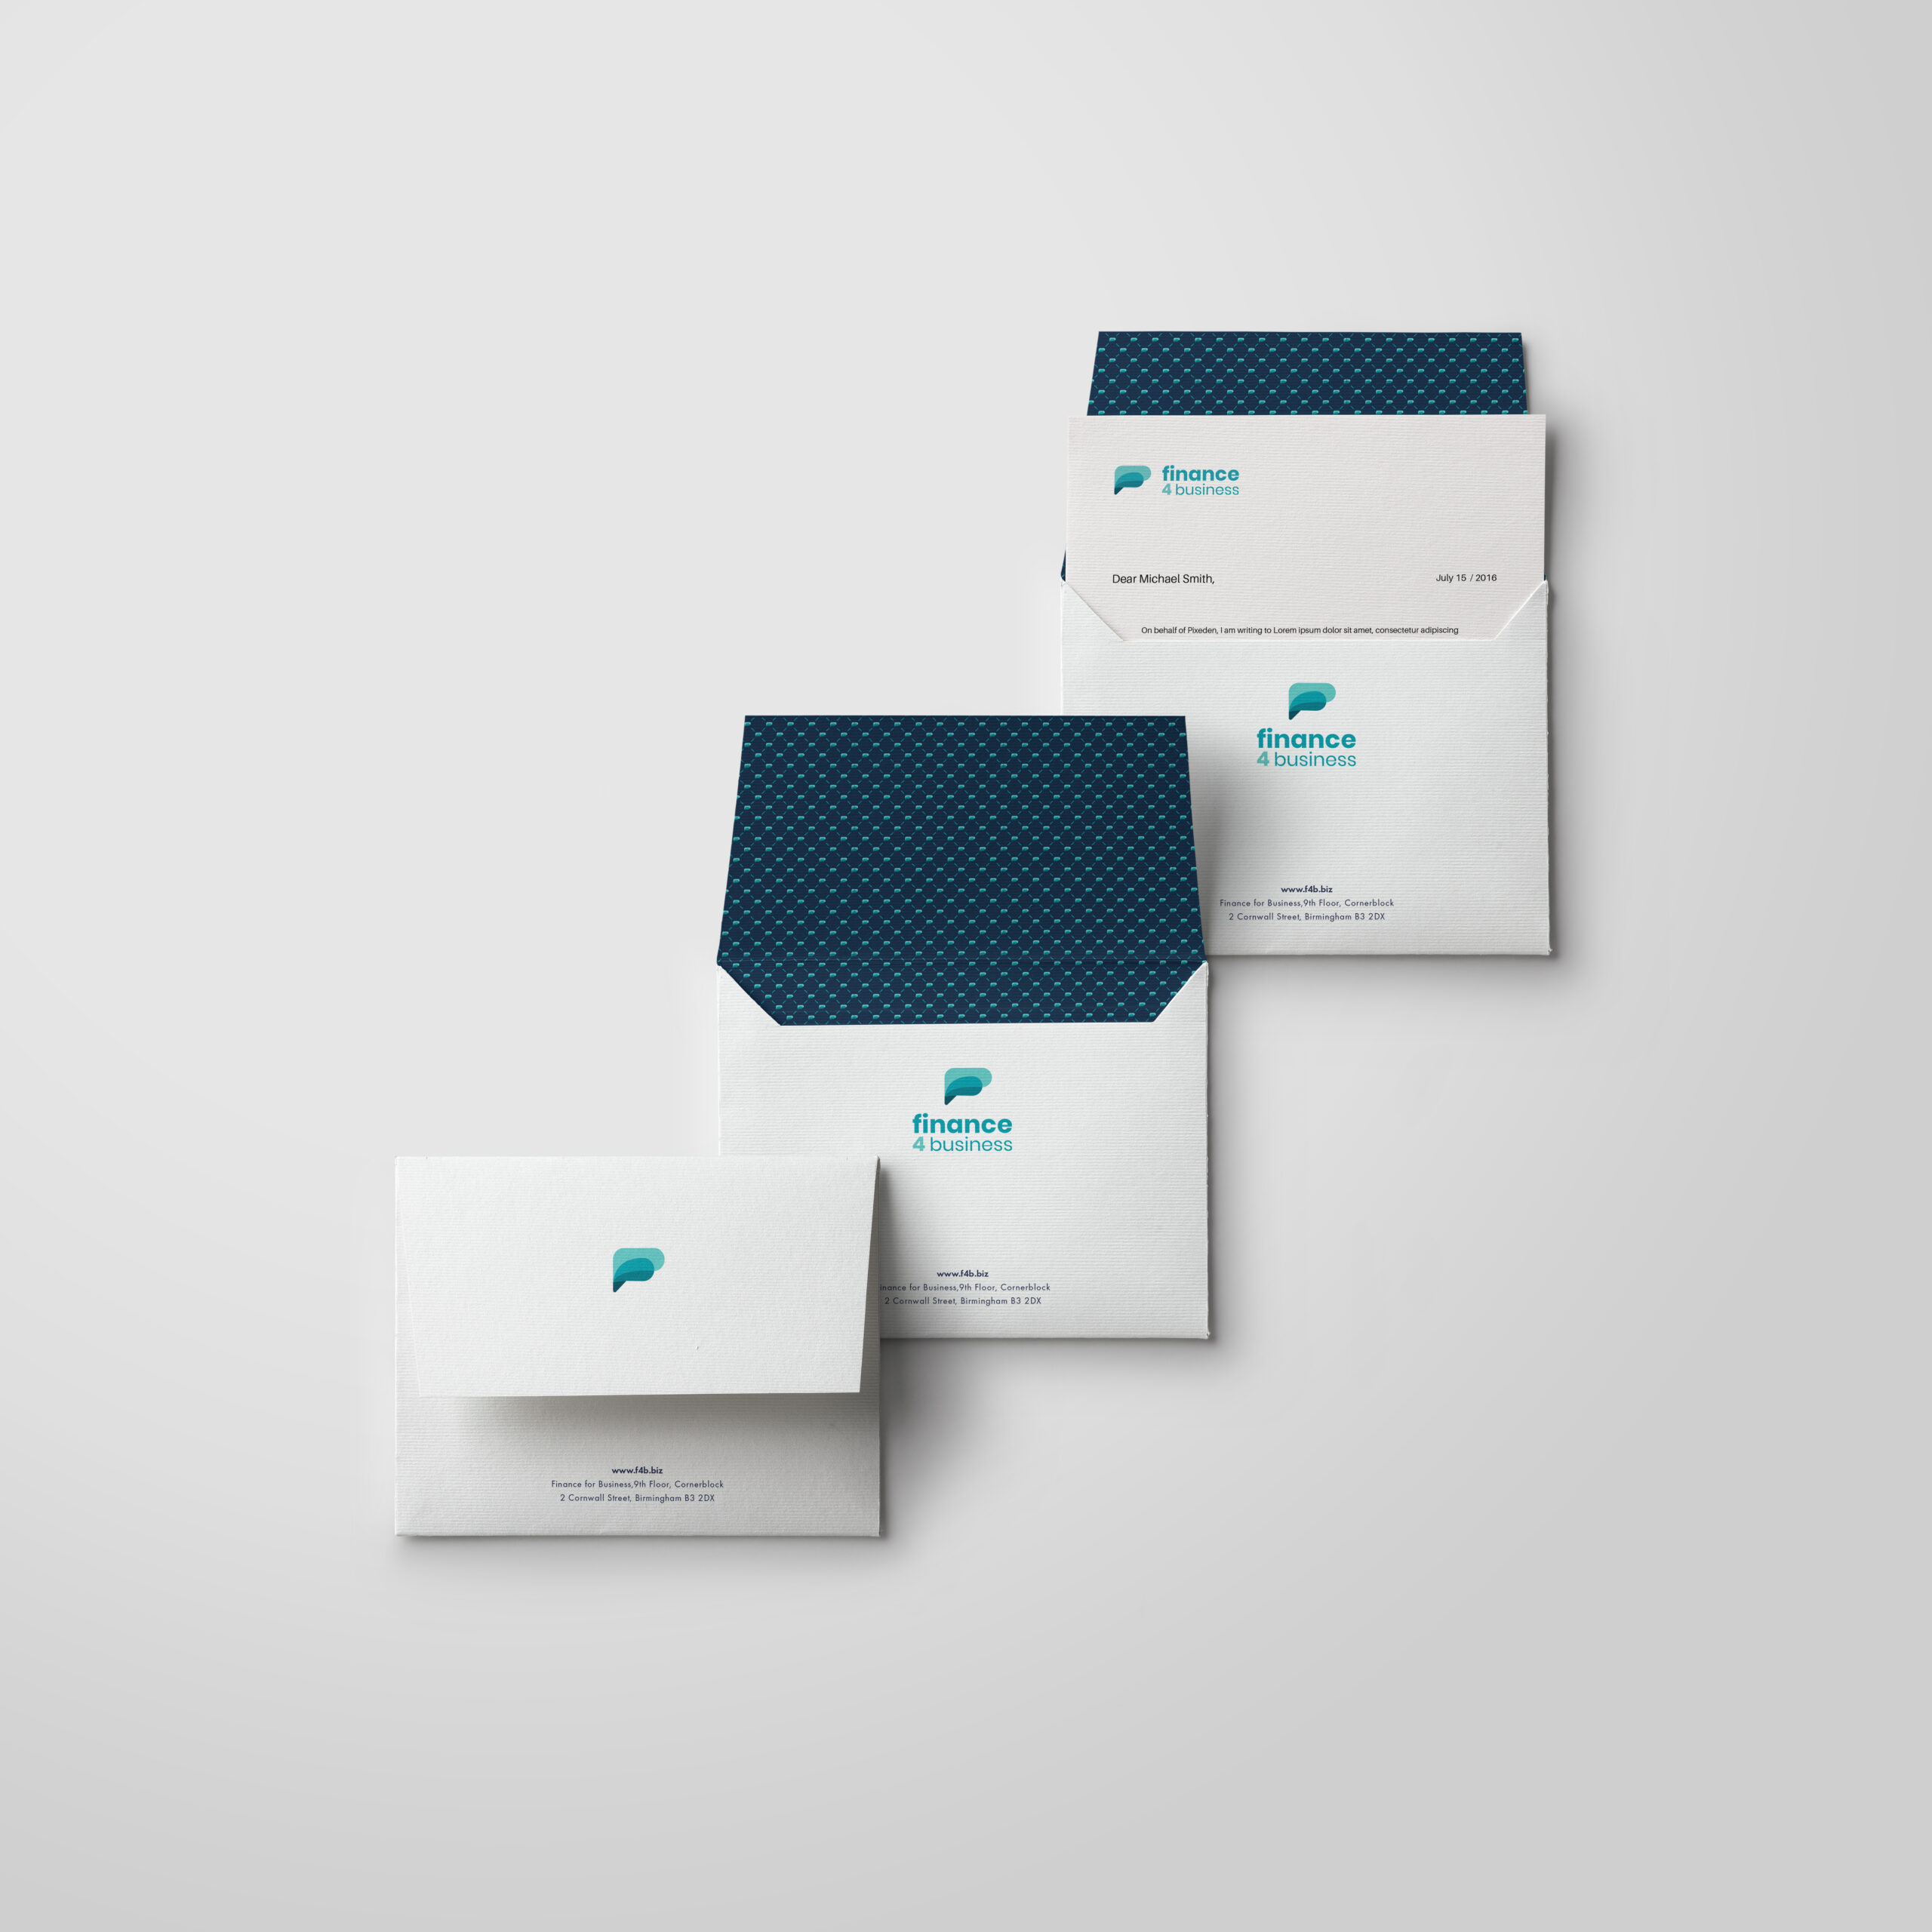 Branded envelope design and branded letter design for Finance For Business